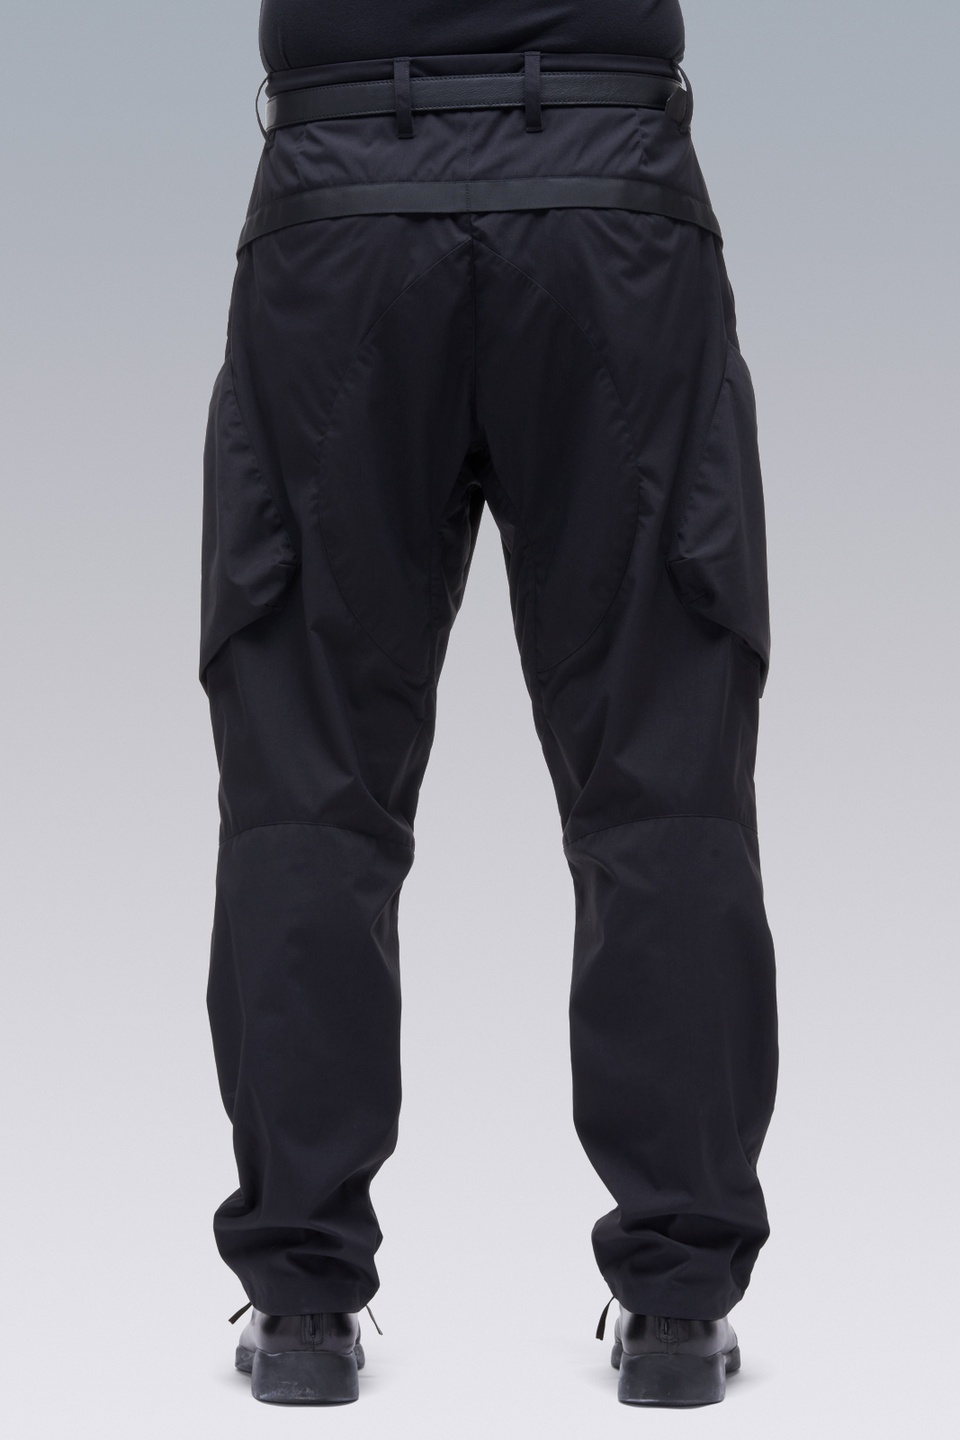 P24A-E Encapsulated Nylon Articulated BDU Trouser Black